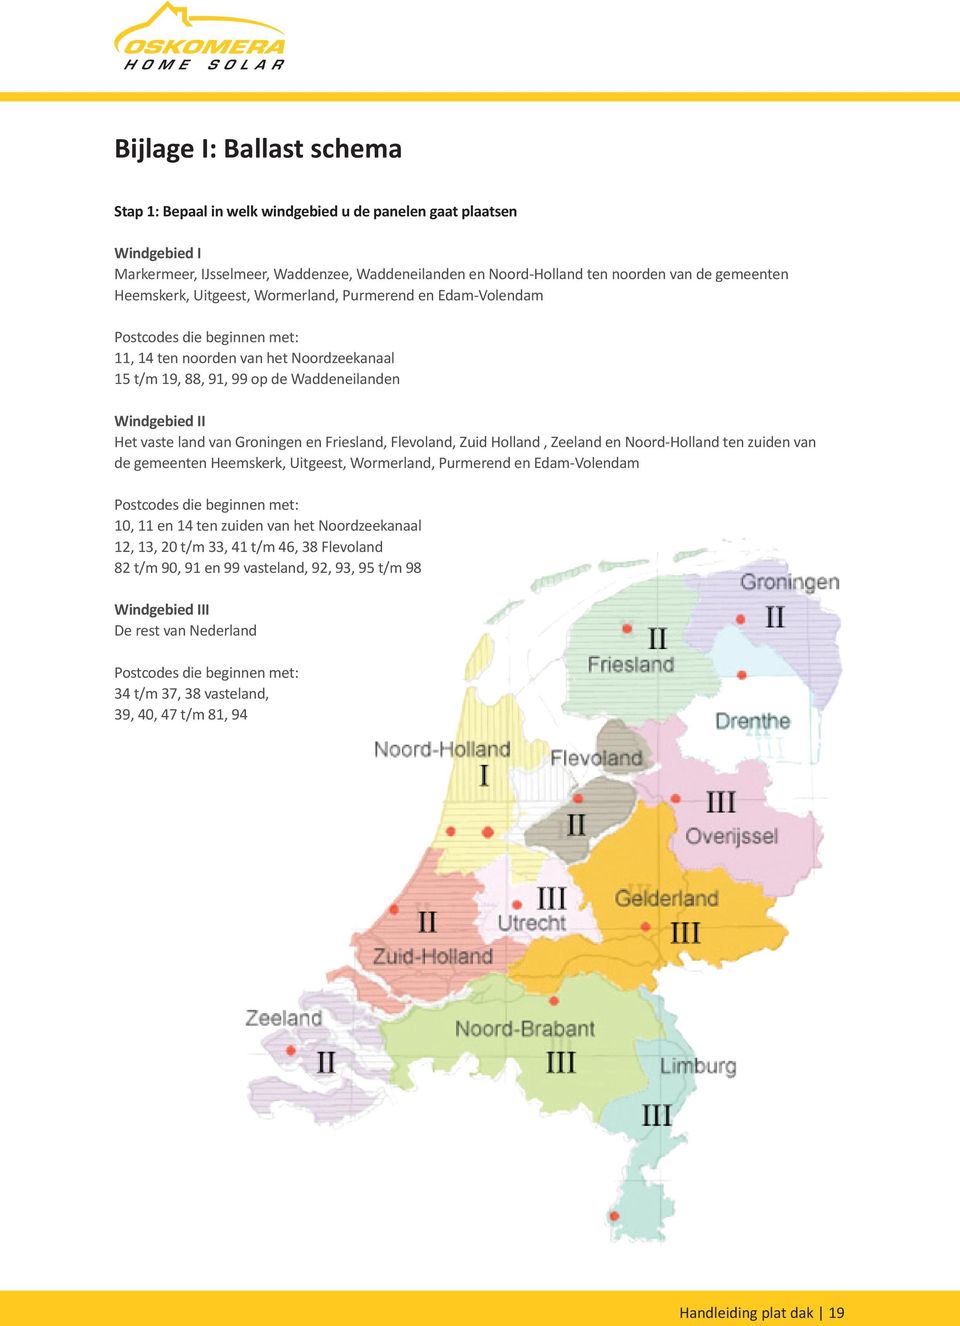 land van Groningen en Friesland, Flevoland, Zuid Holland, Zeeland en Noord-Holland ten zuiden van de gemeenten Heemskerk, Uitgeest, Wormerland, Purmerend en Edam-Volendam Postcodes die beginnen met: